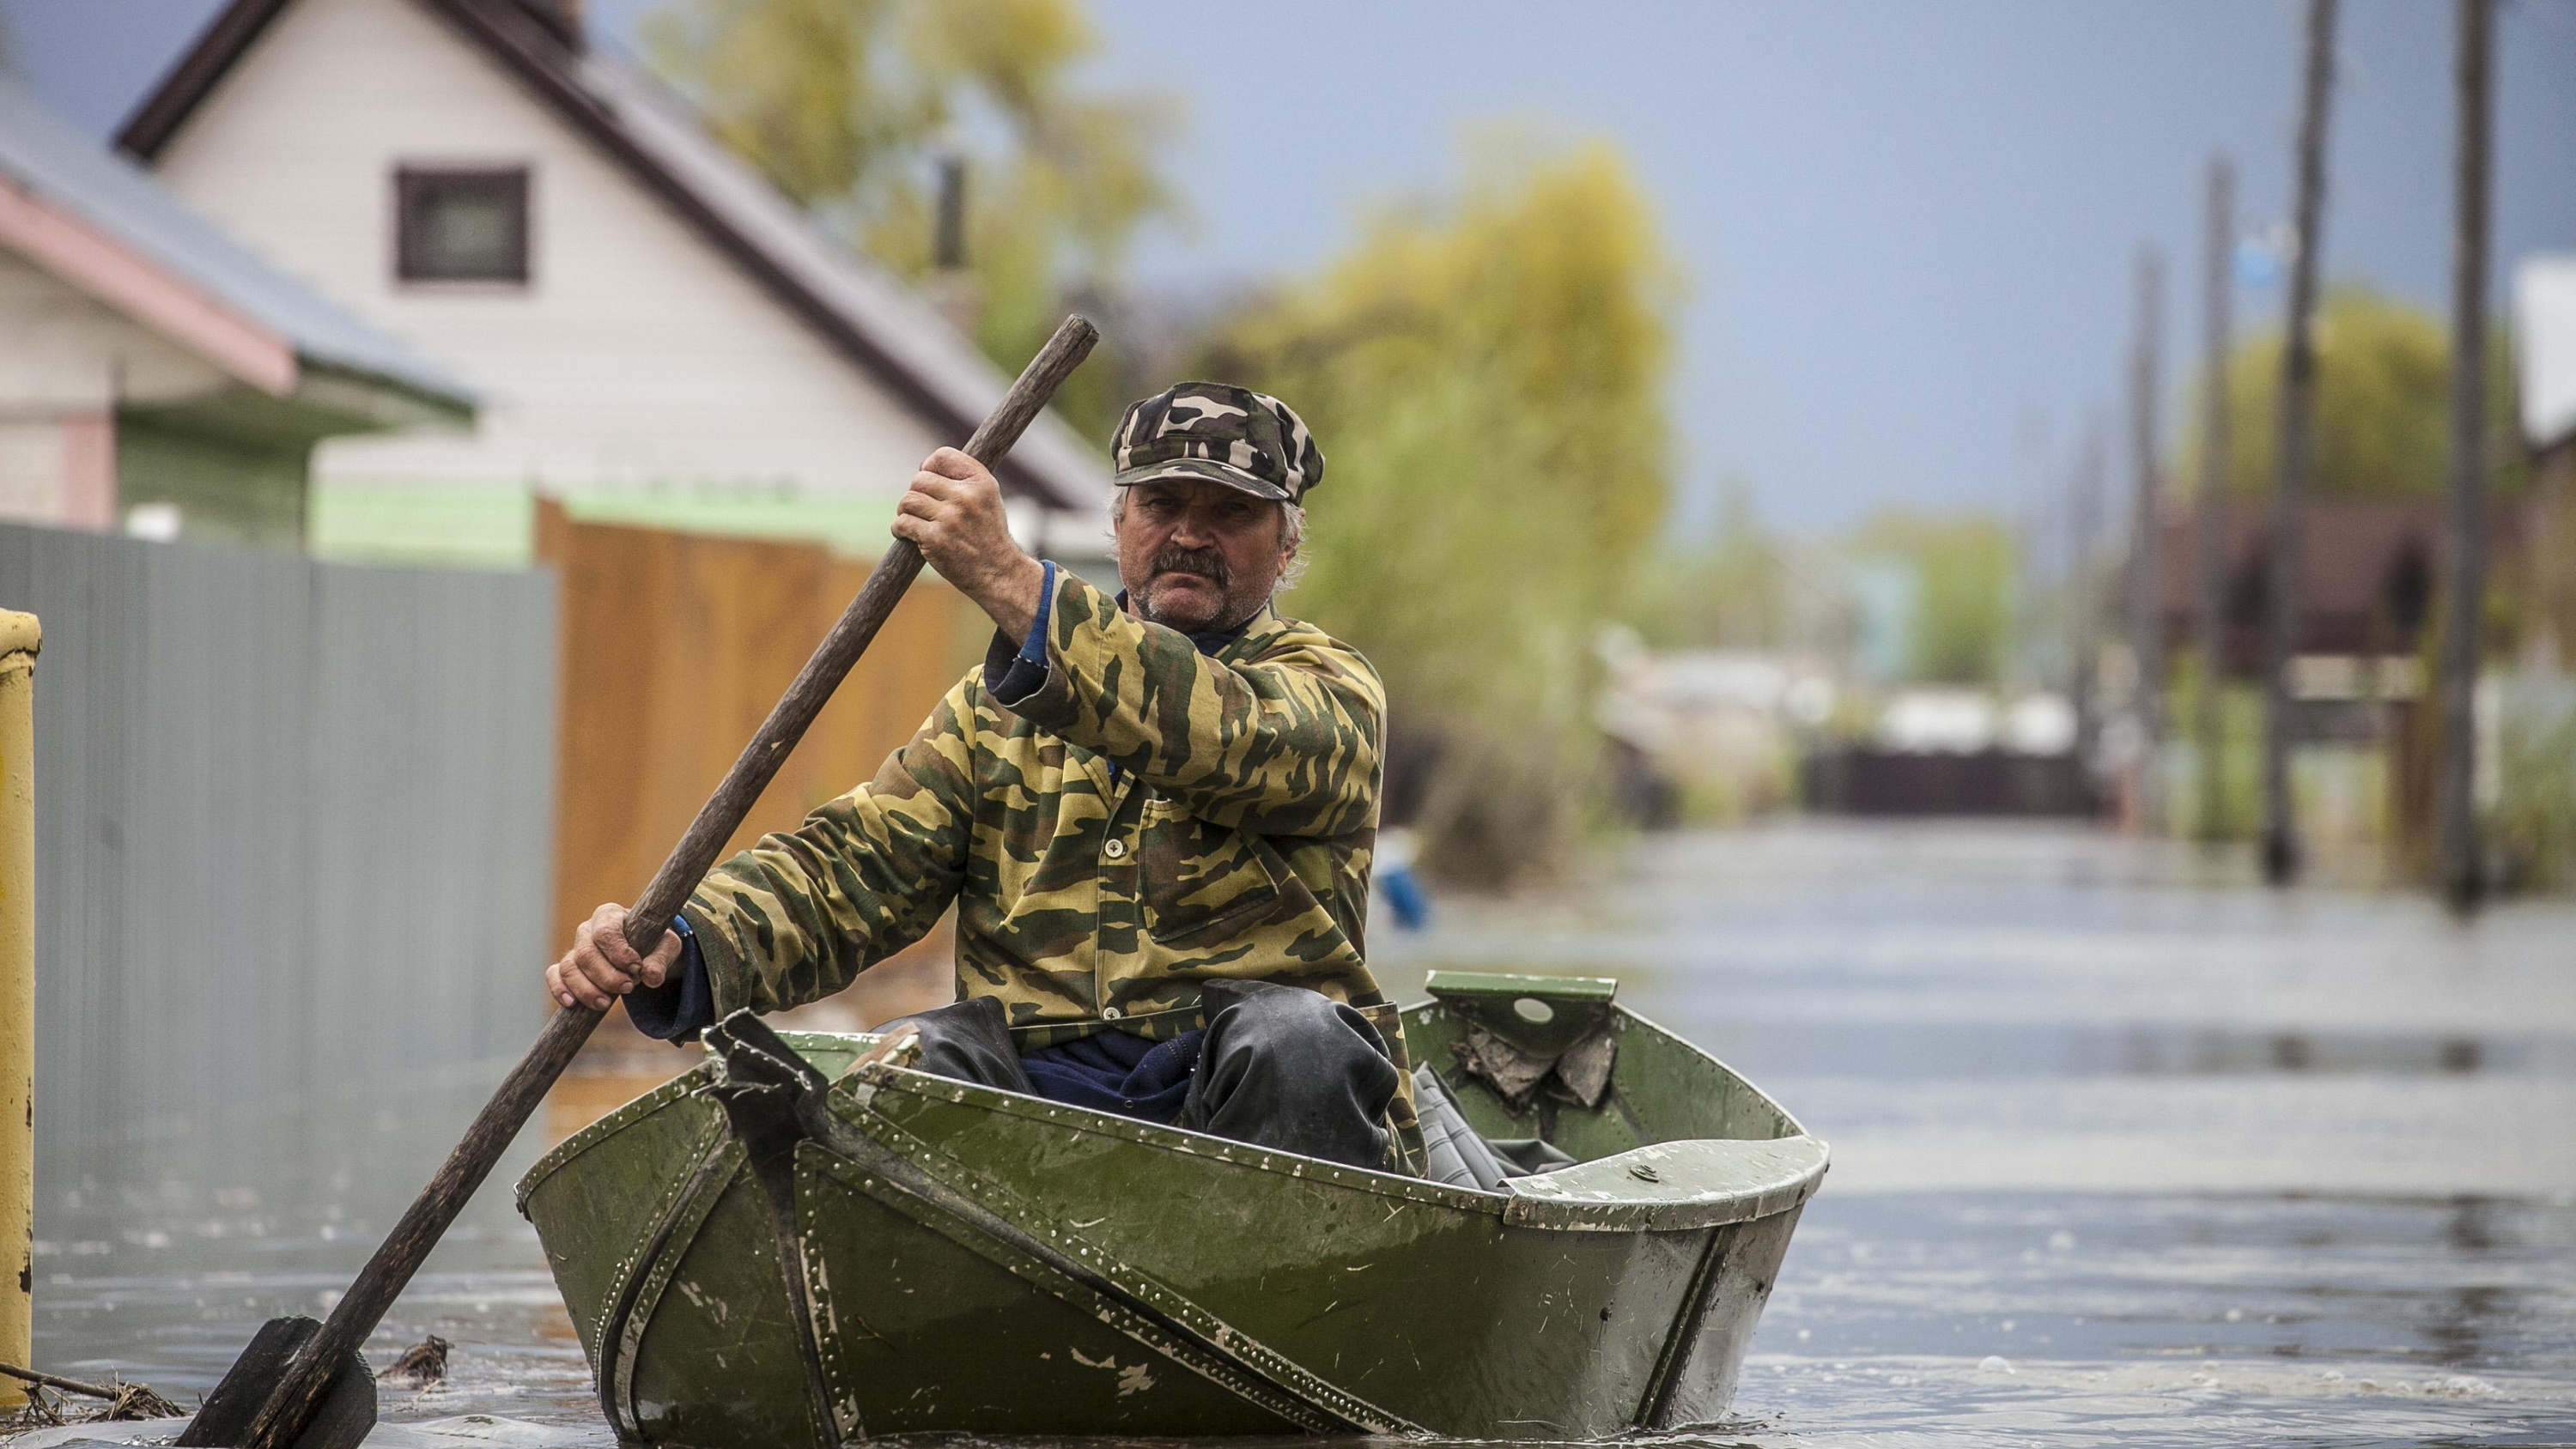 Укреплена дамба, затоплено 60 домов — оперативные данные о паводке в Алтайском крае